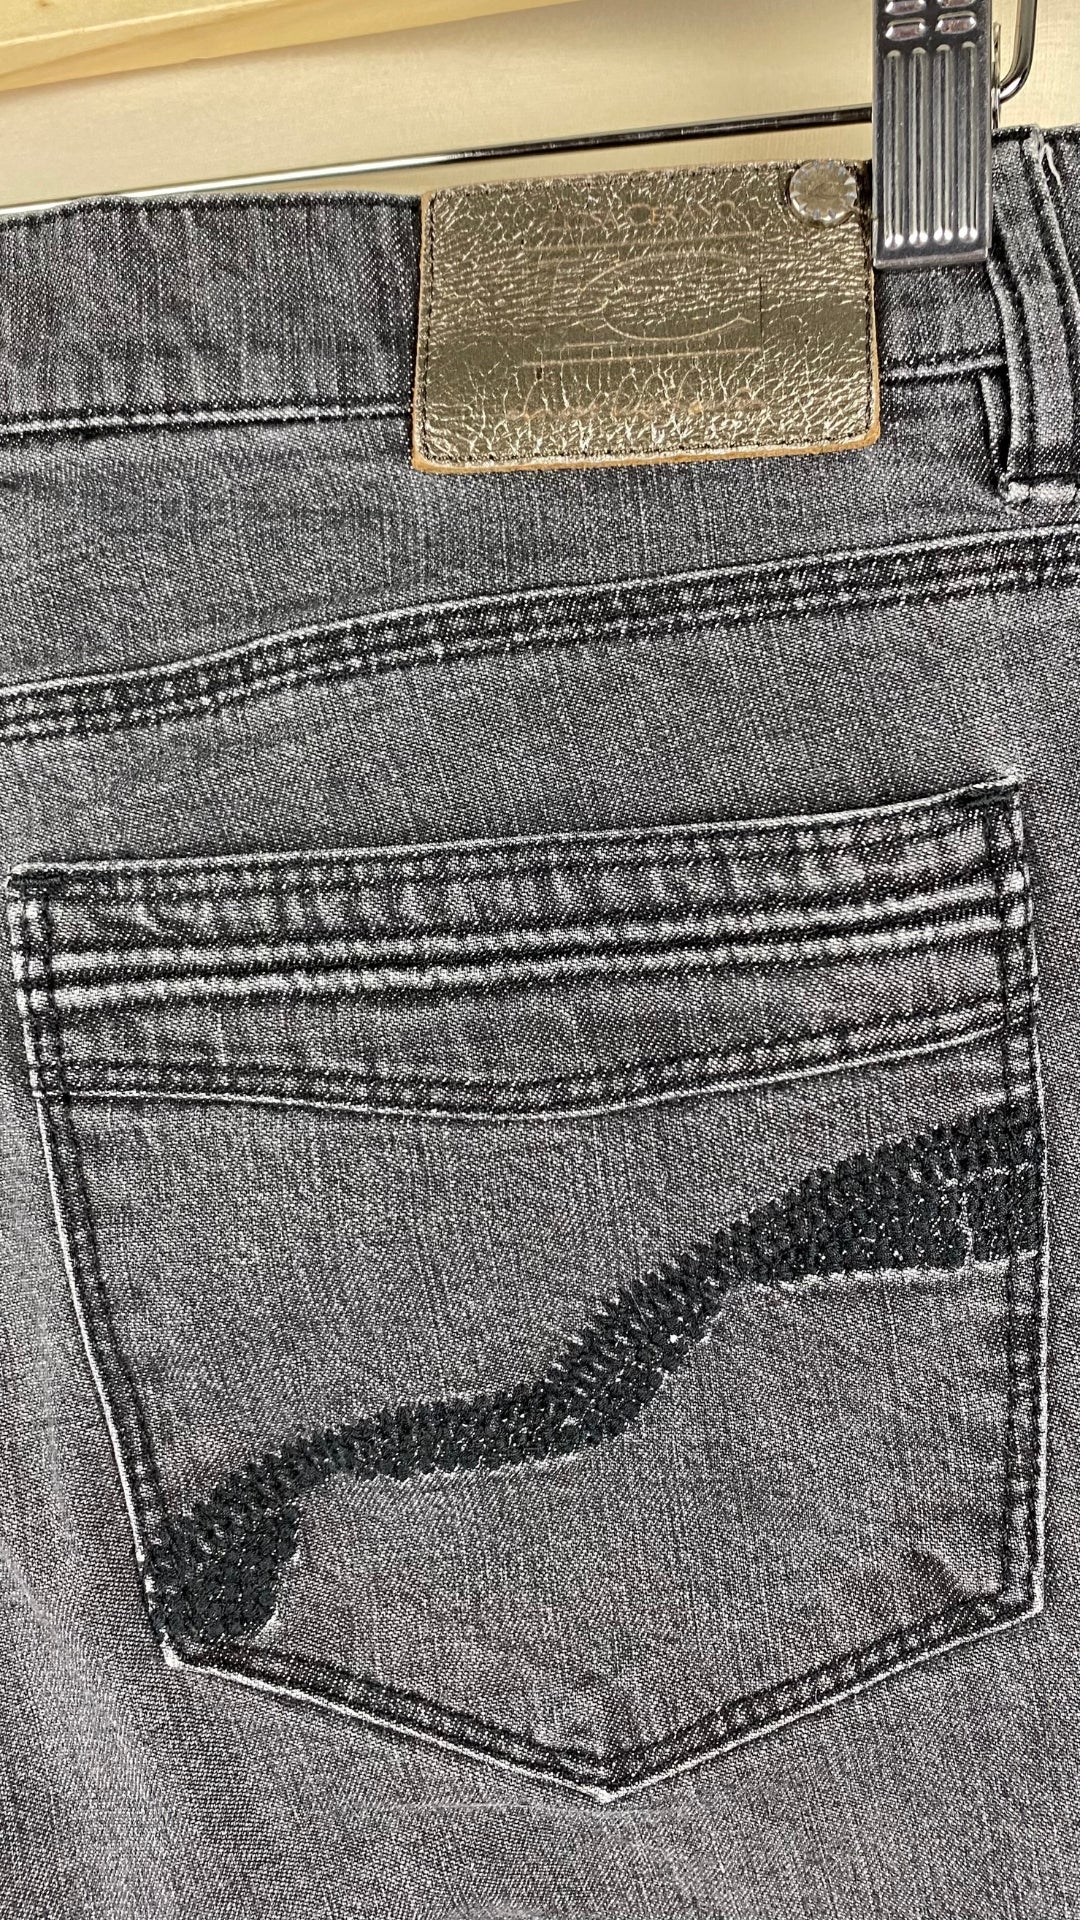 Jeans gris délavé à jambe large Luisa Cerano, taille 10. Vue de la poche au dos.